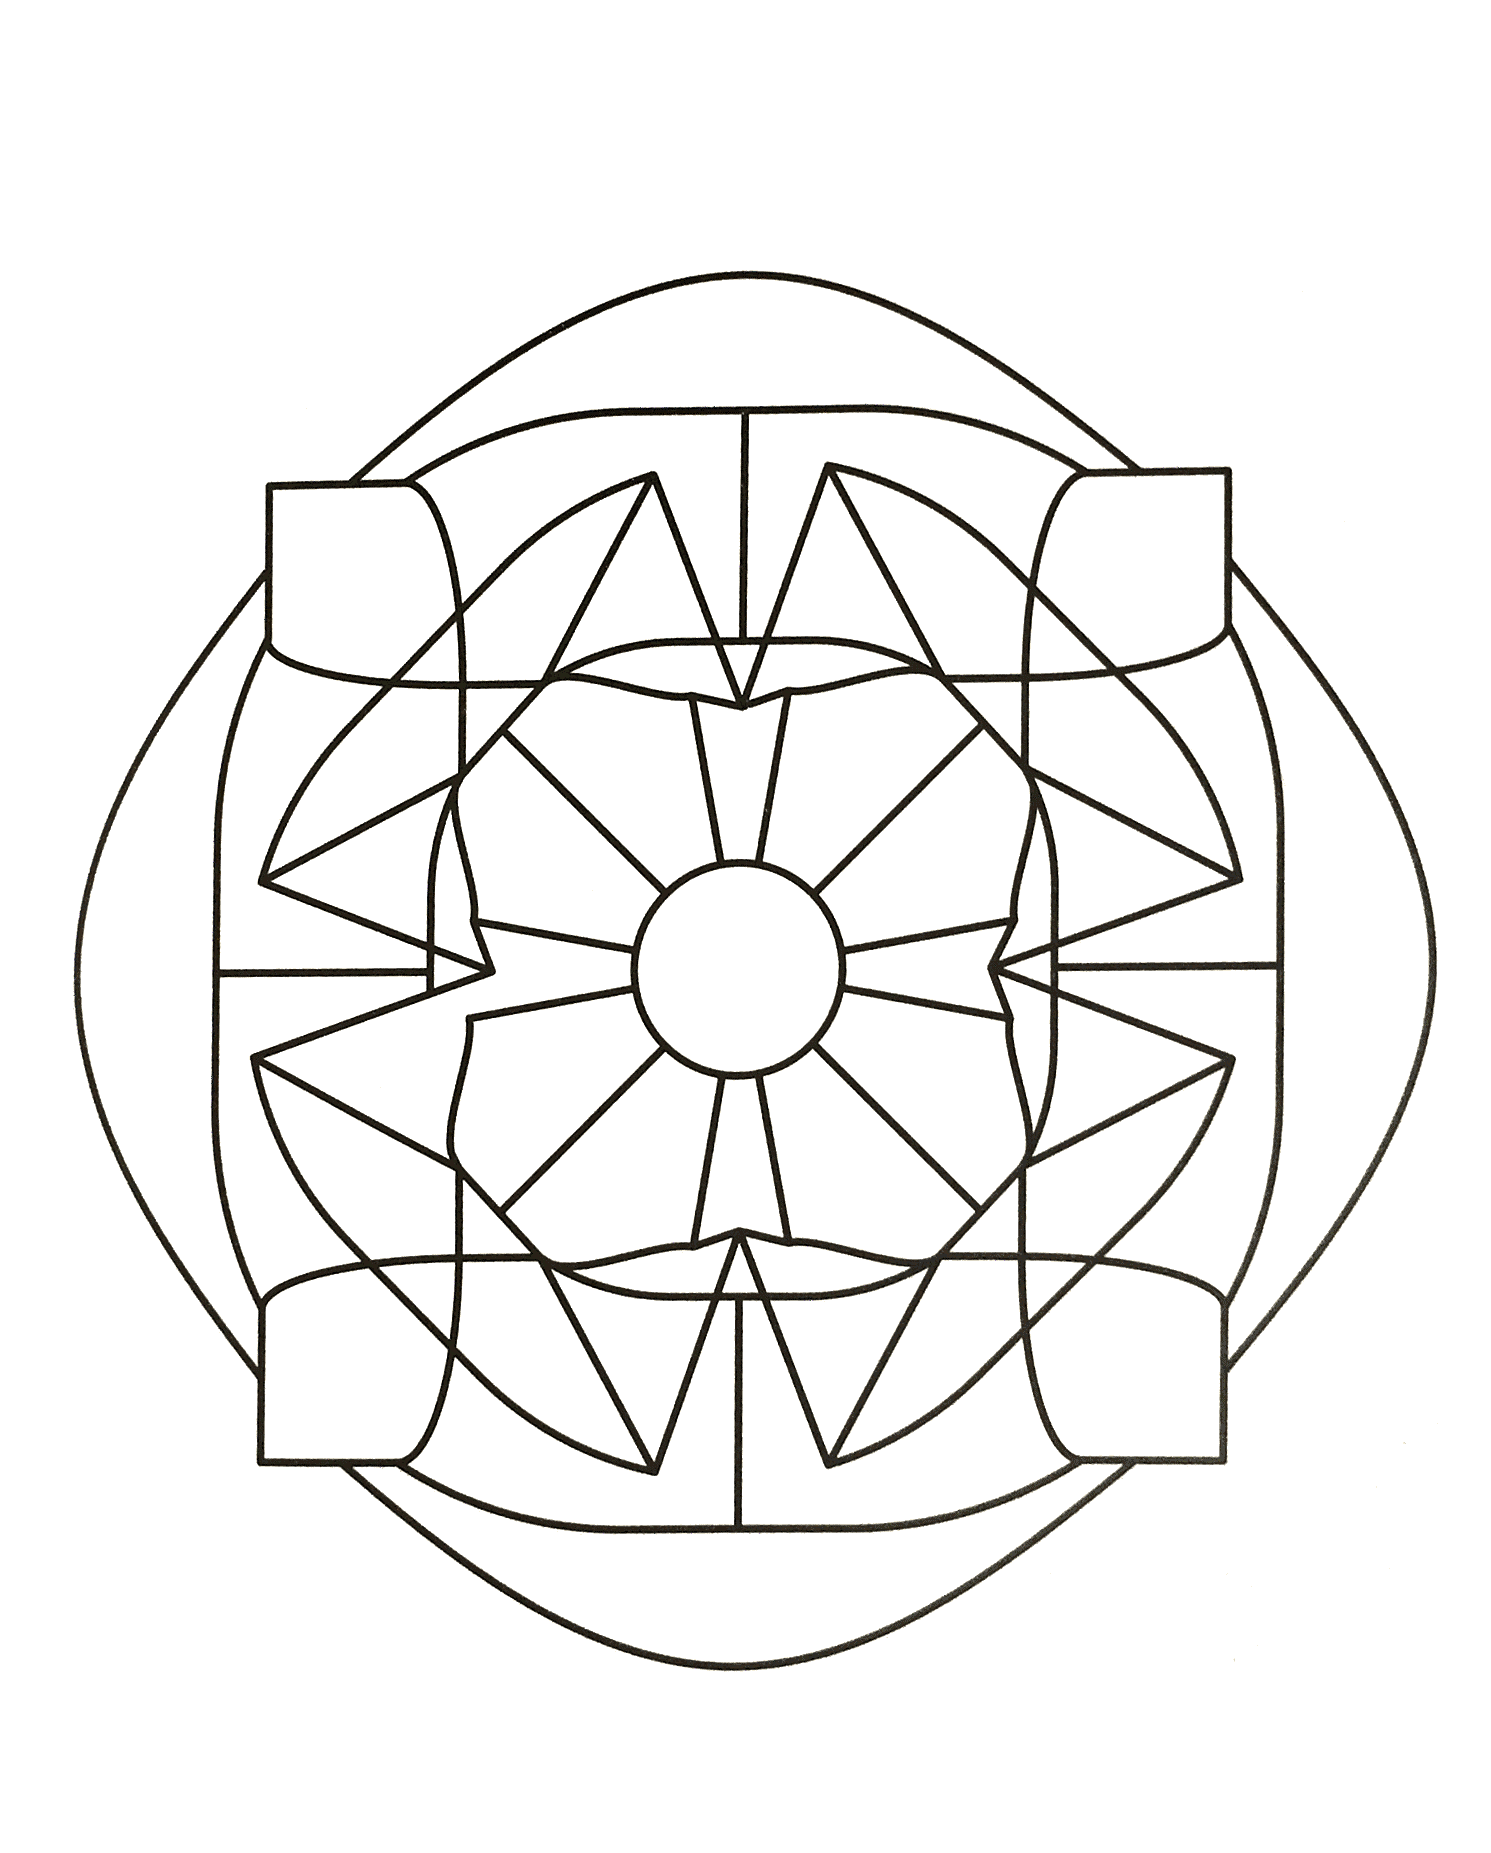 Joli mandala symétrique assez abstrait où figure différents éléments comme plusieurs triangles ainsi qu'un cercle au centre du dessin.